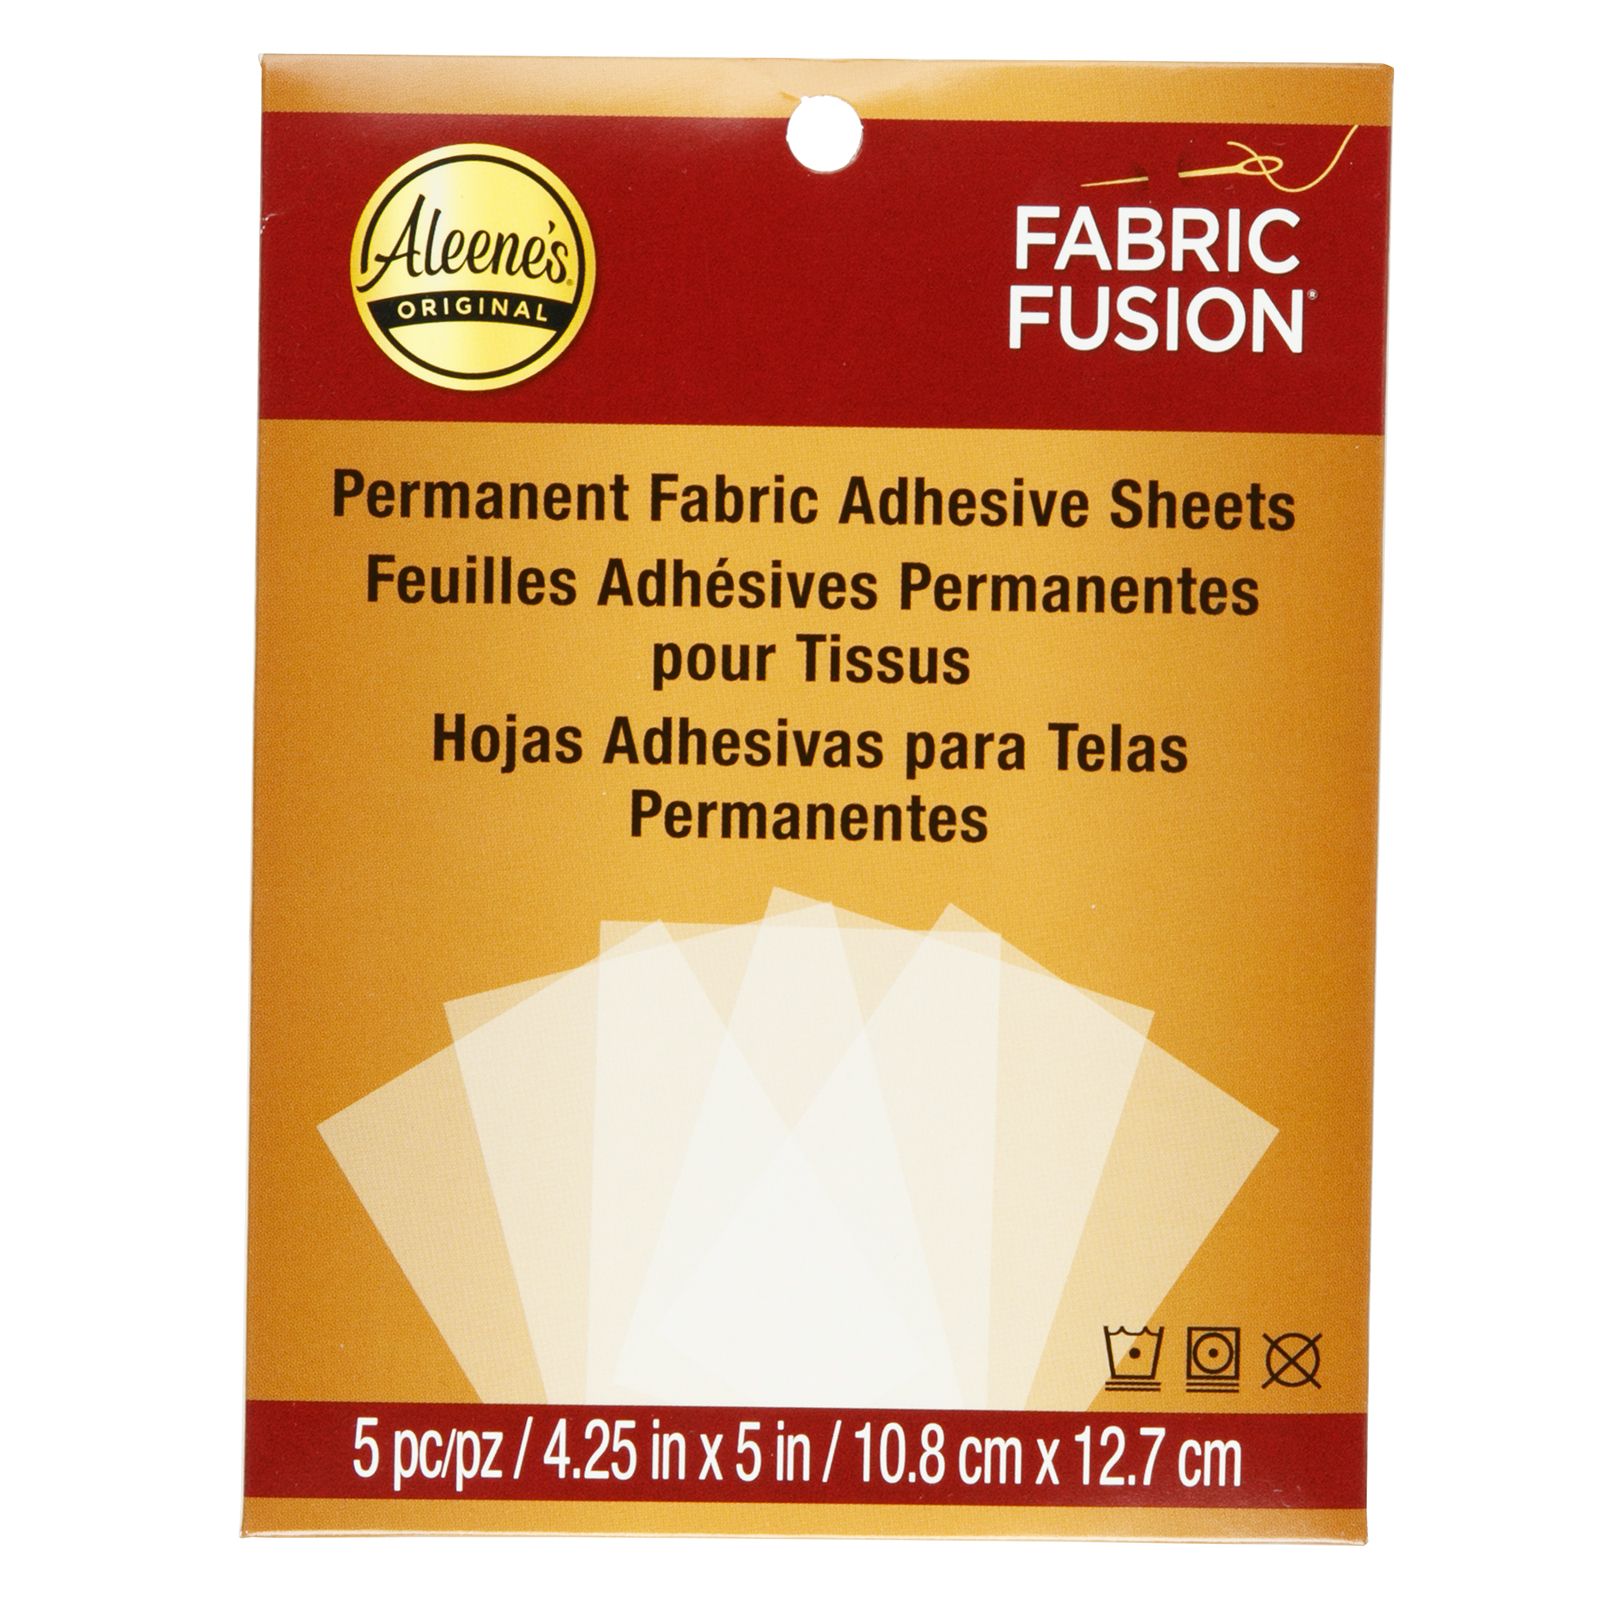 Aleene's • Fabric Fusion Feuilles Adhésives permanentes pour tissus 5pcs